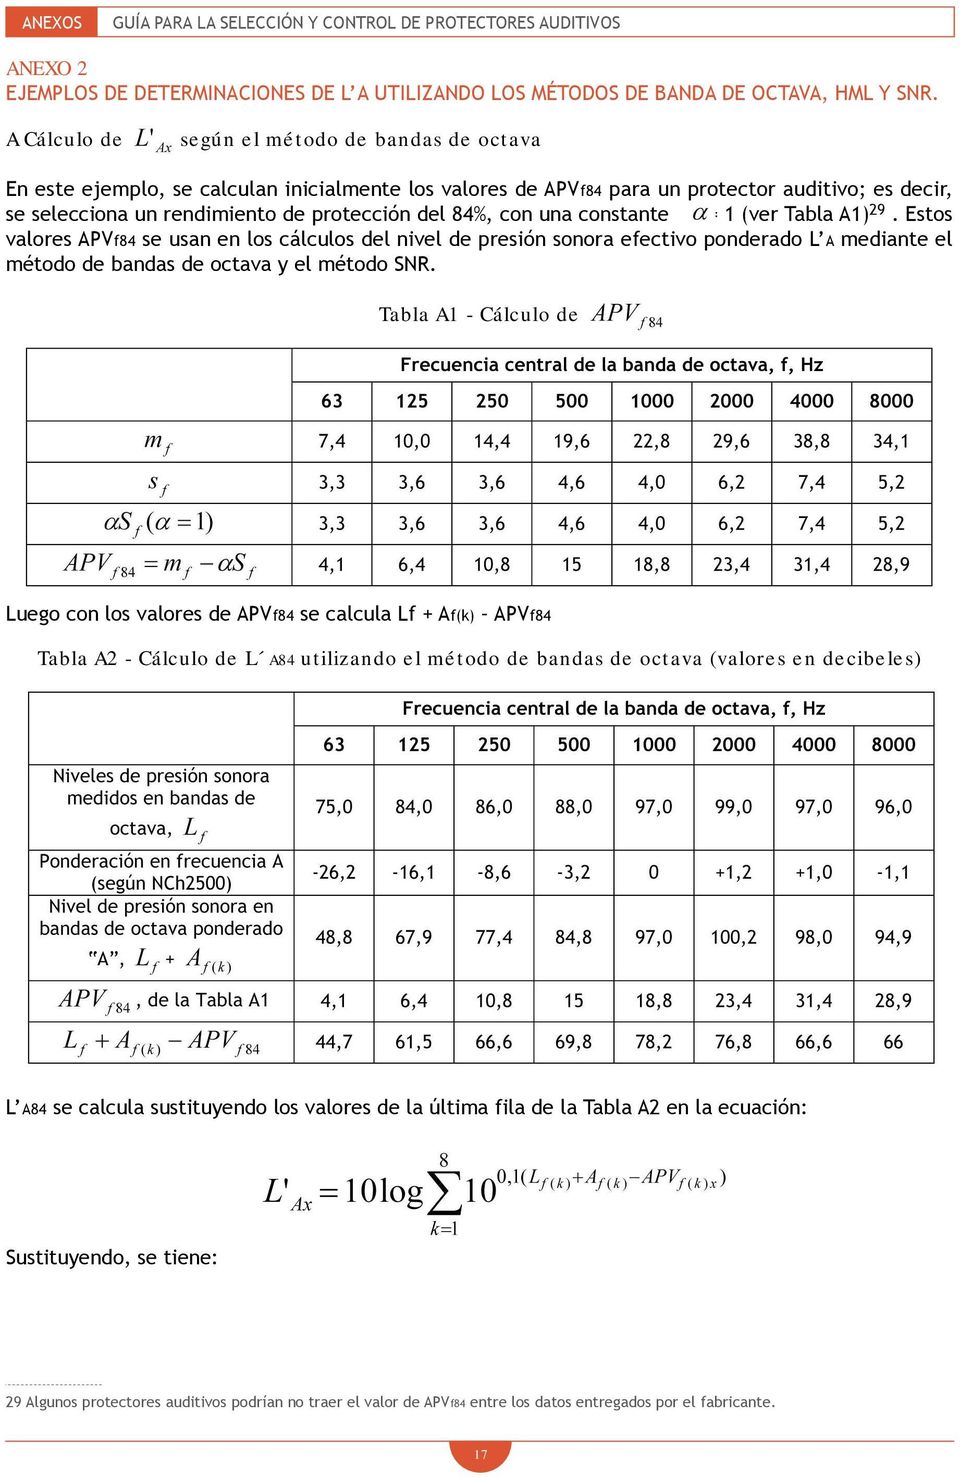 84%, con una constante = 1 (ver Tabla A1) 29. Estos valores APVf84 se usan en los cálculos del nivel de presión sonora efectivo ponderado L A mediante el método de bandas de octava y el método SNR.